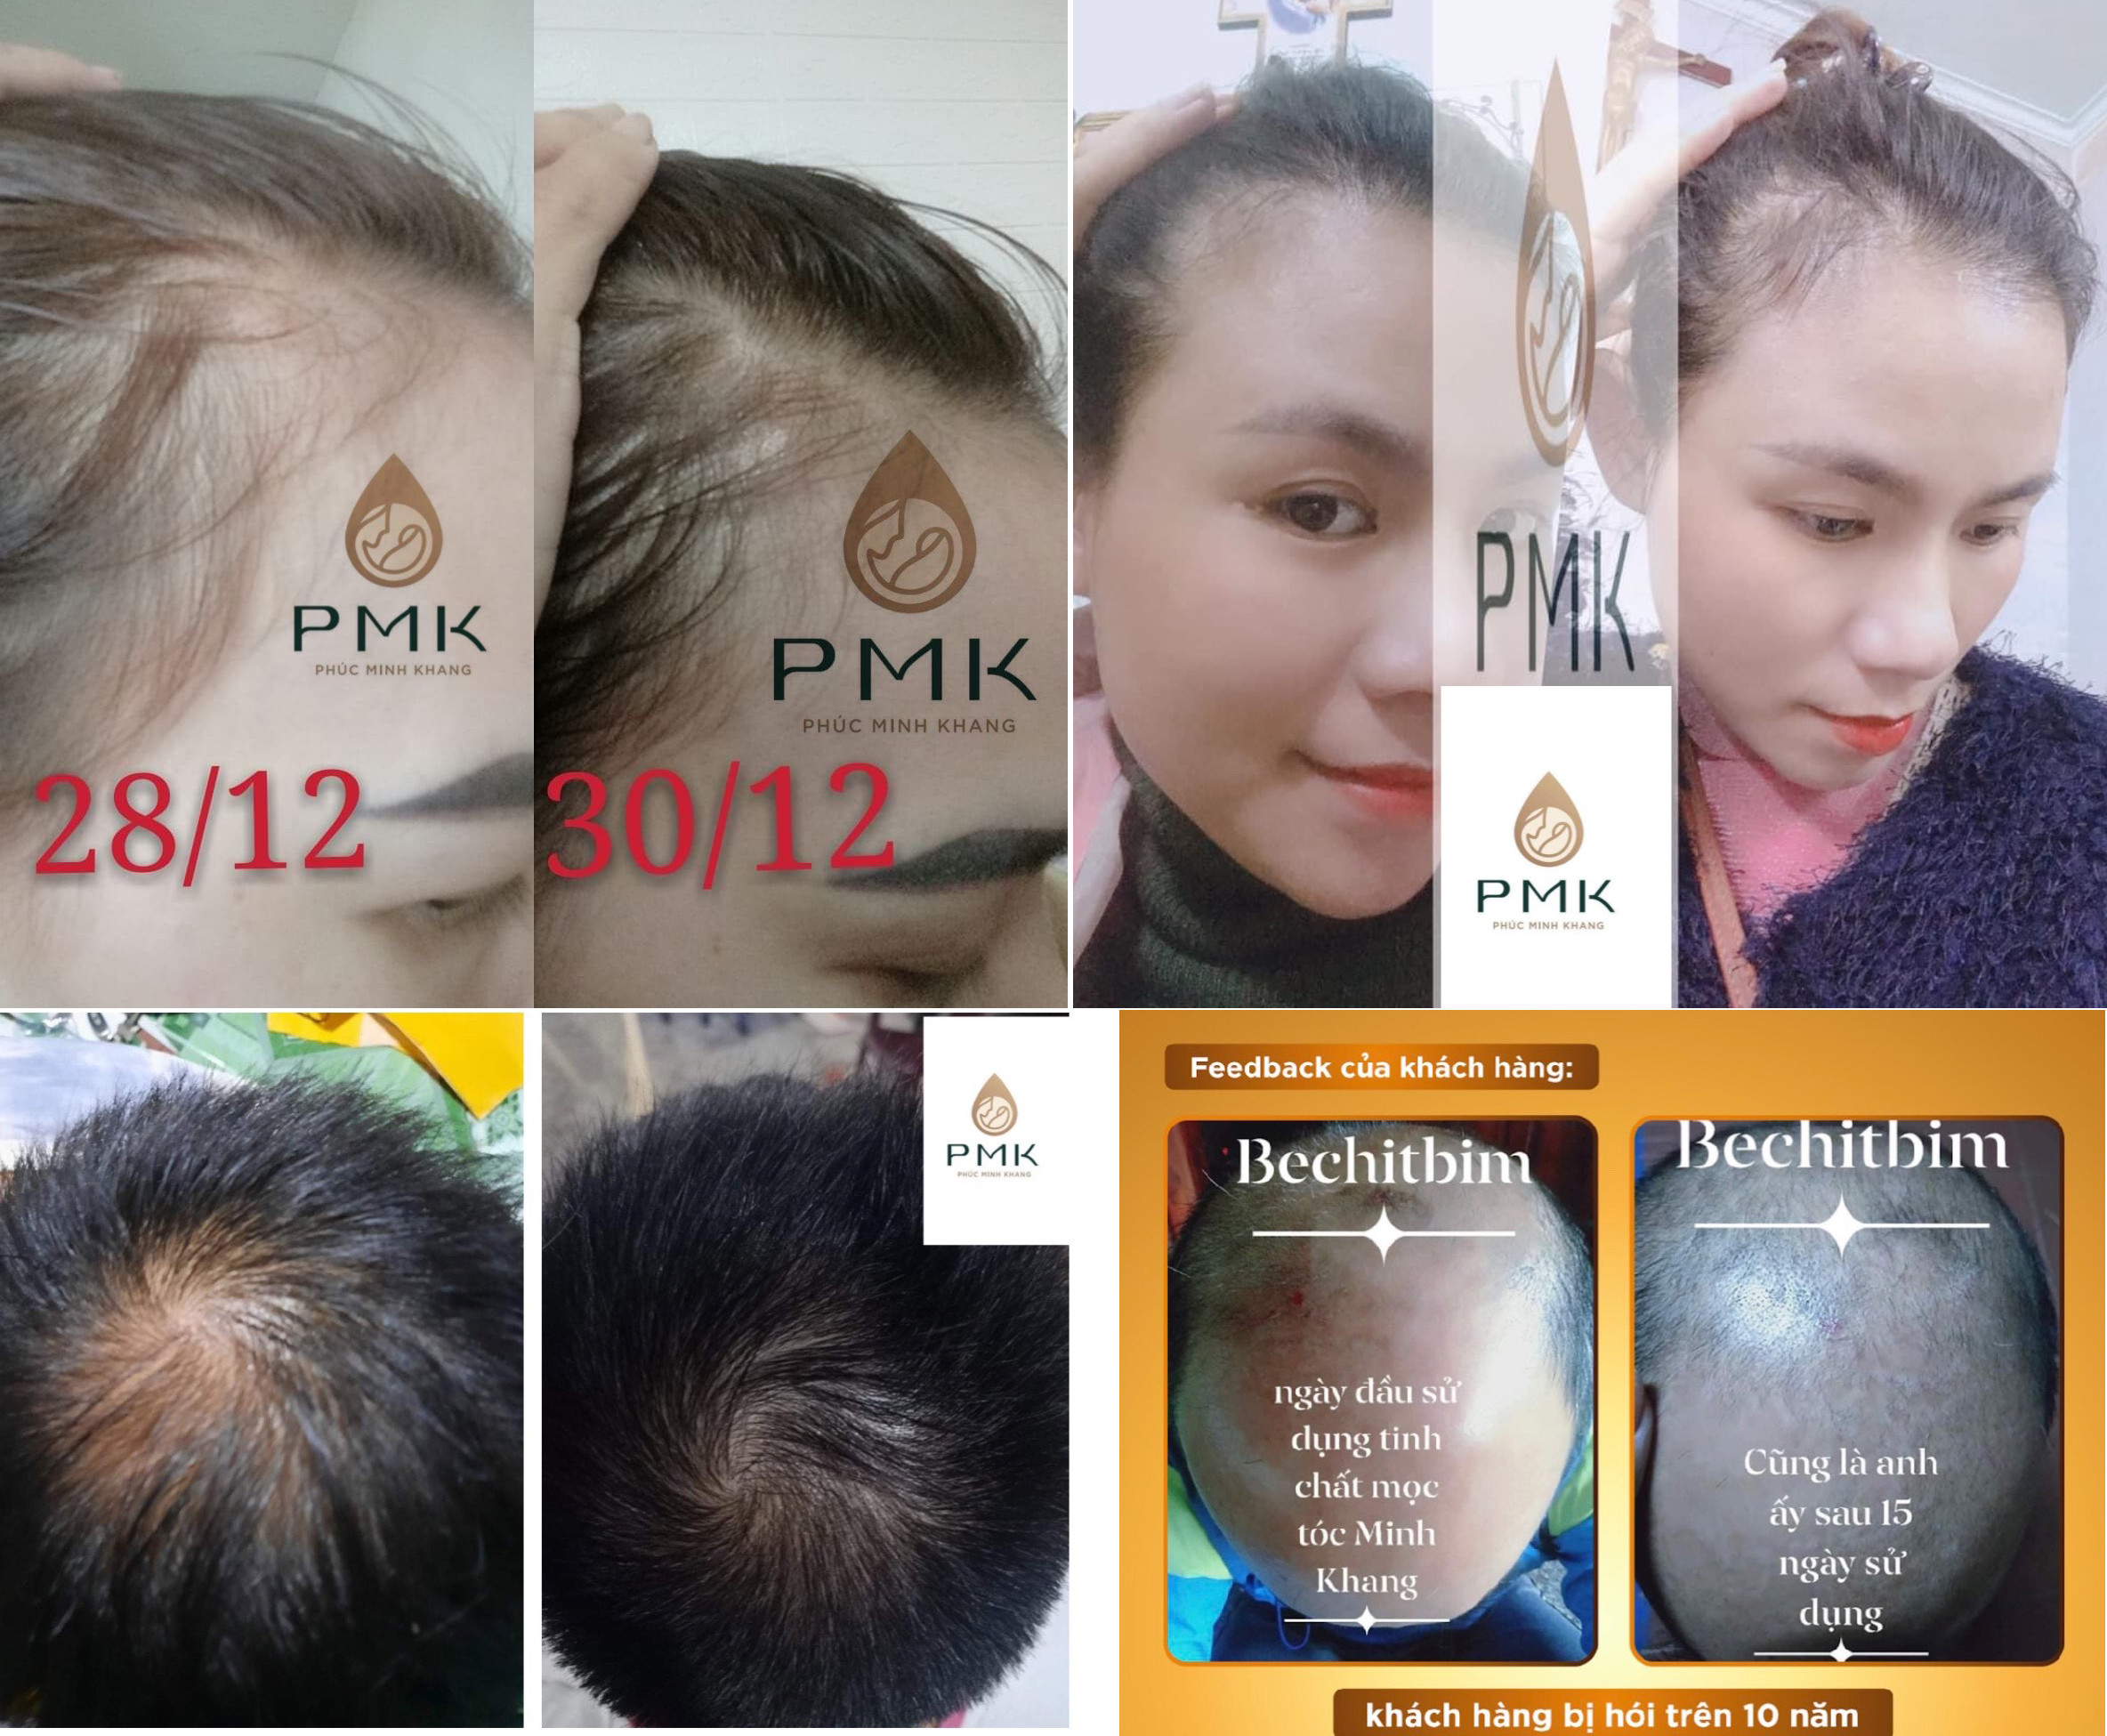 Tinh chất mọc tóc cao cấp Minh Khang được đông đảo khách hàng tin dùng, bởi hiệu quả cao trong chữa rụng, hói tóc lâu năm.